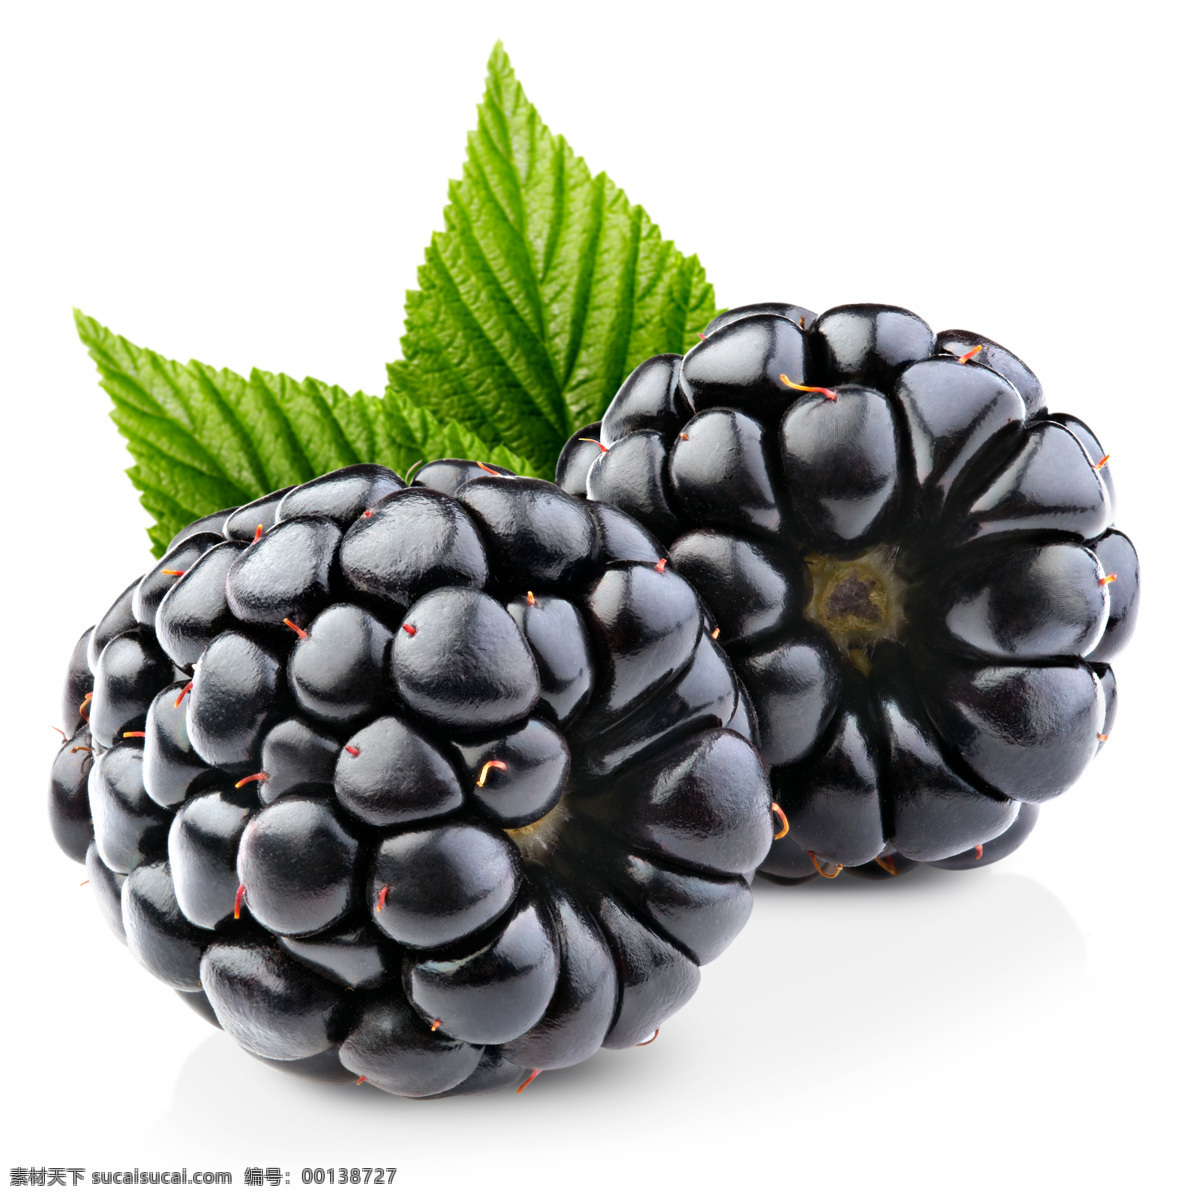 黑莓摄影 黑莓 新鲜水果 水果摄影 果实 浆果 水果蔬菜 餐饮美食 白色